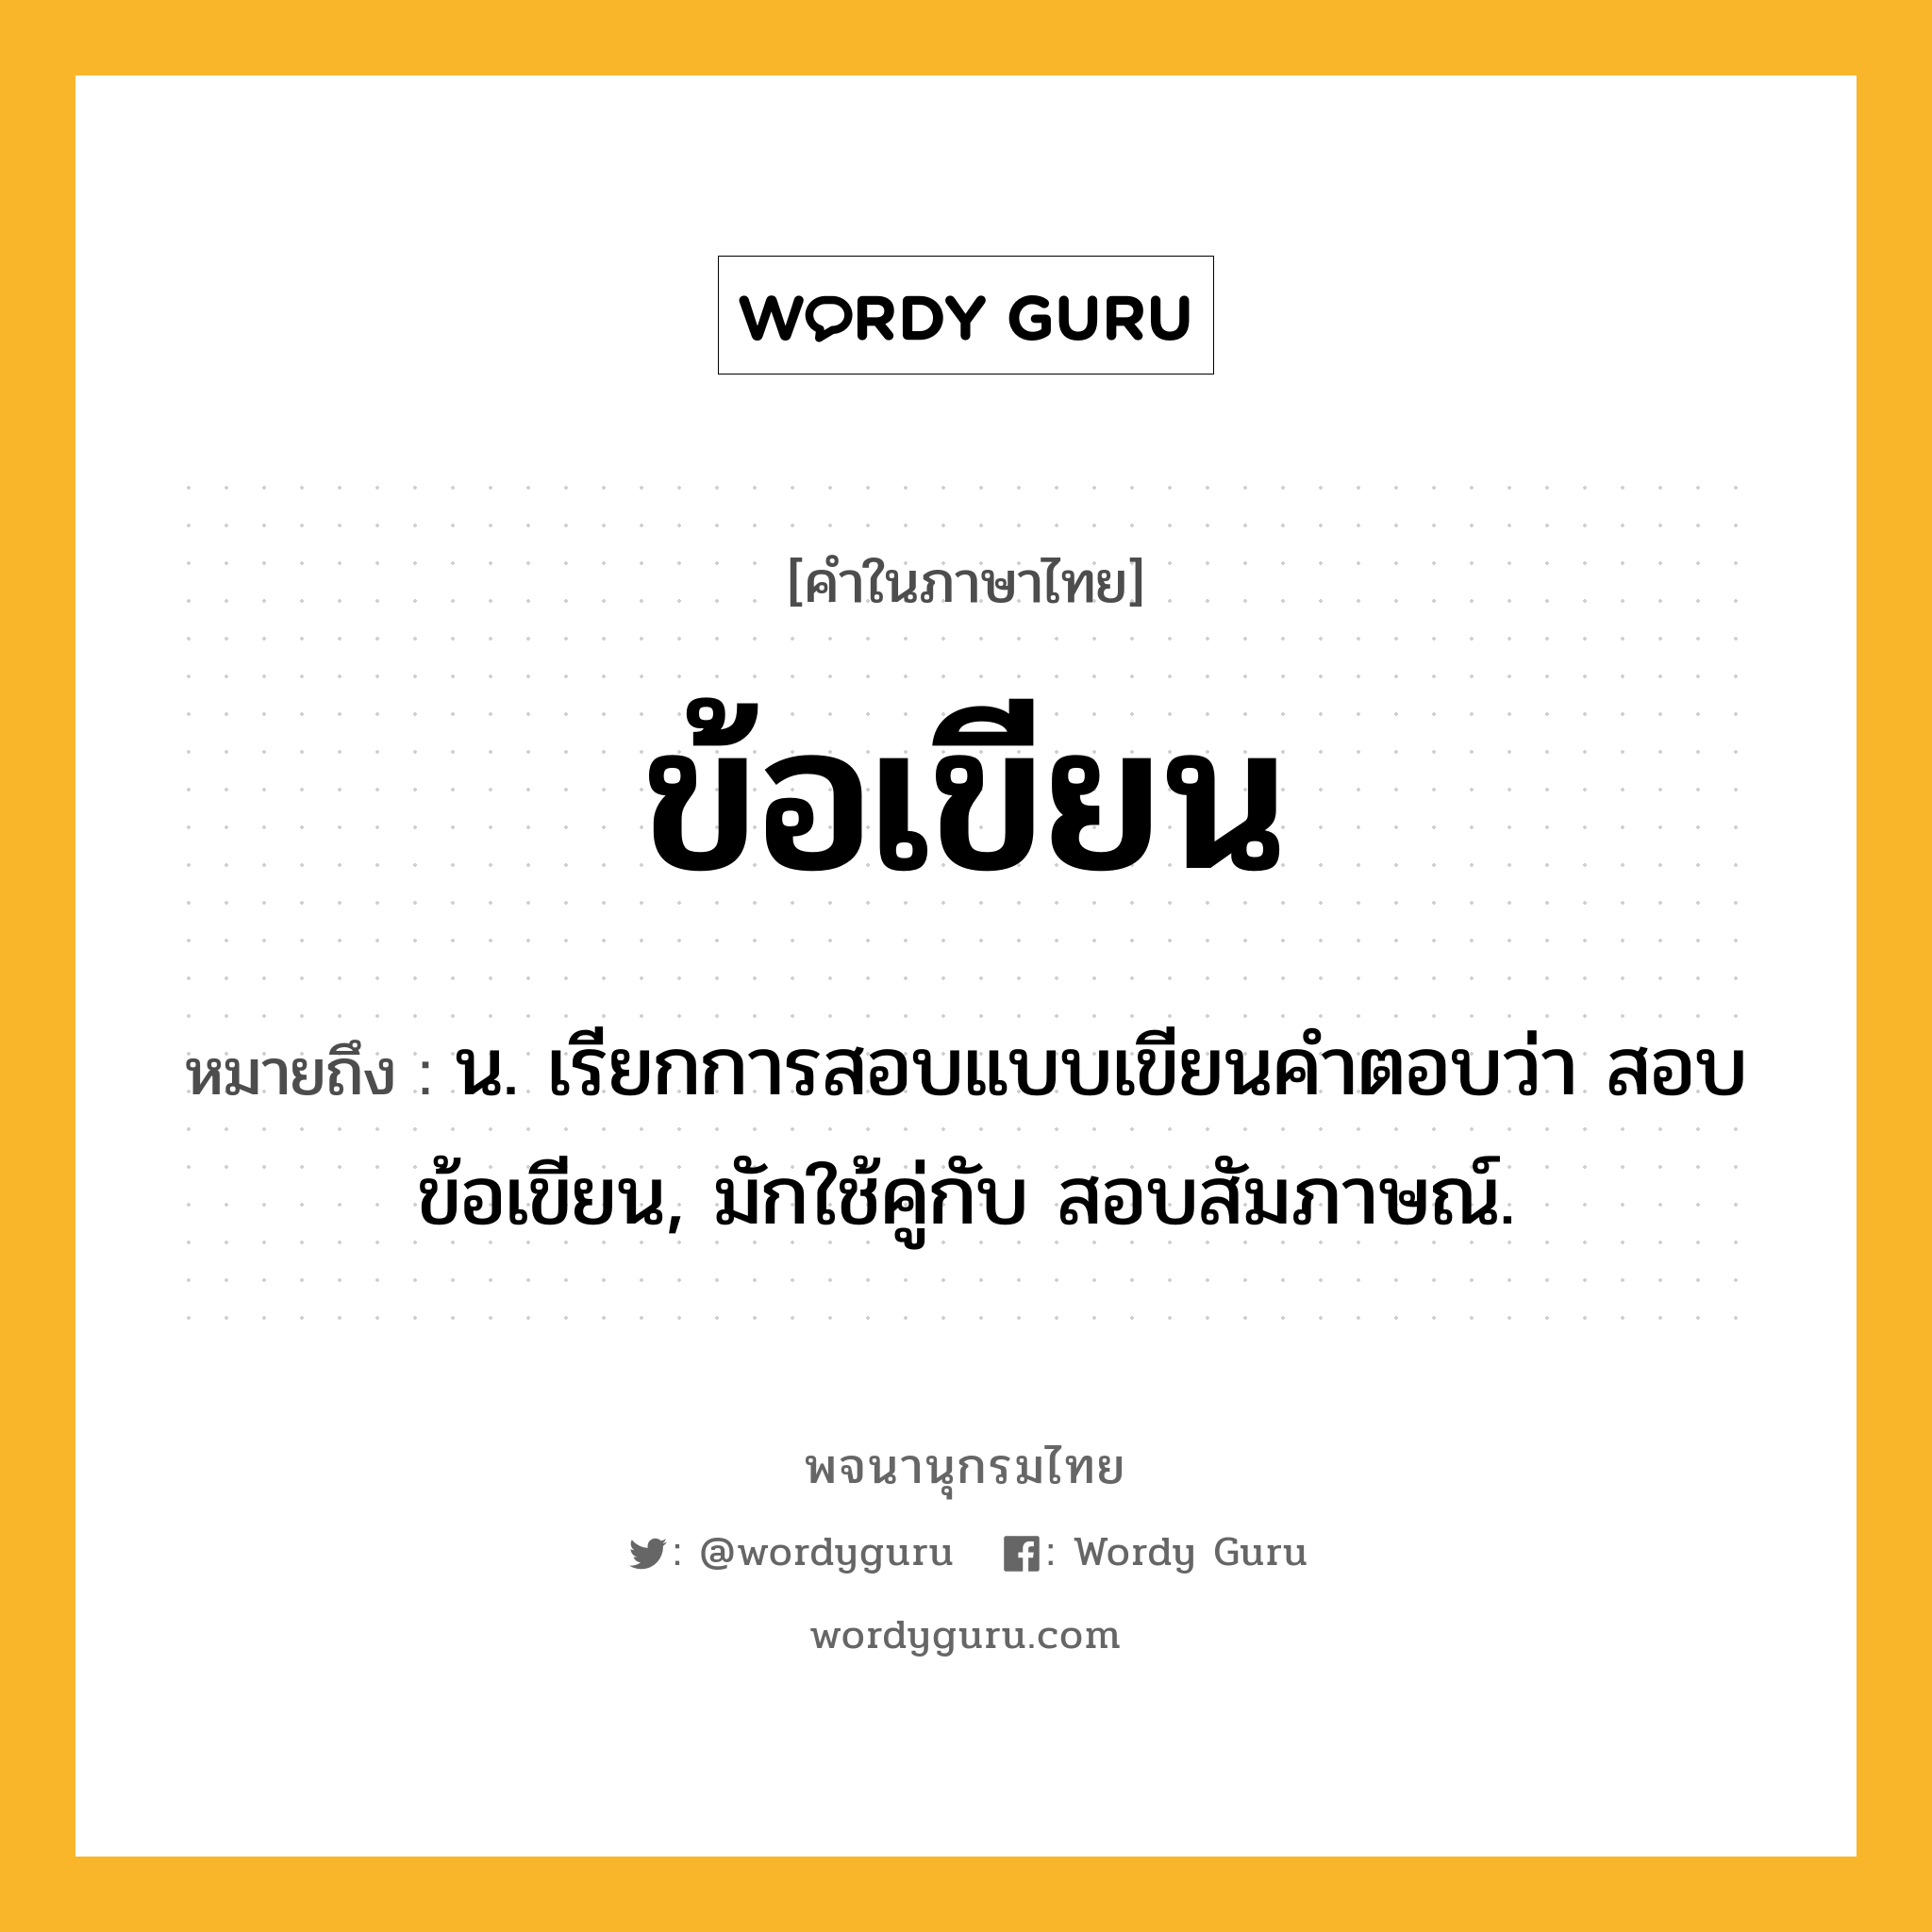 ข้อเขียน ความหมาย หมายถึงอะไร?, คำในภาษาไทย ข้อเขียน หมายถึง น. เรียกการสอบแบบเขียนคําตอบว่า สอบข้อเขียน, มักใช้คู่กับ สอบสัมภาษณ์.